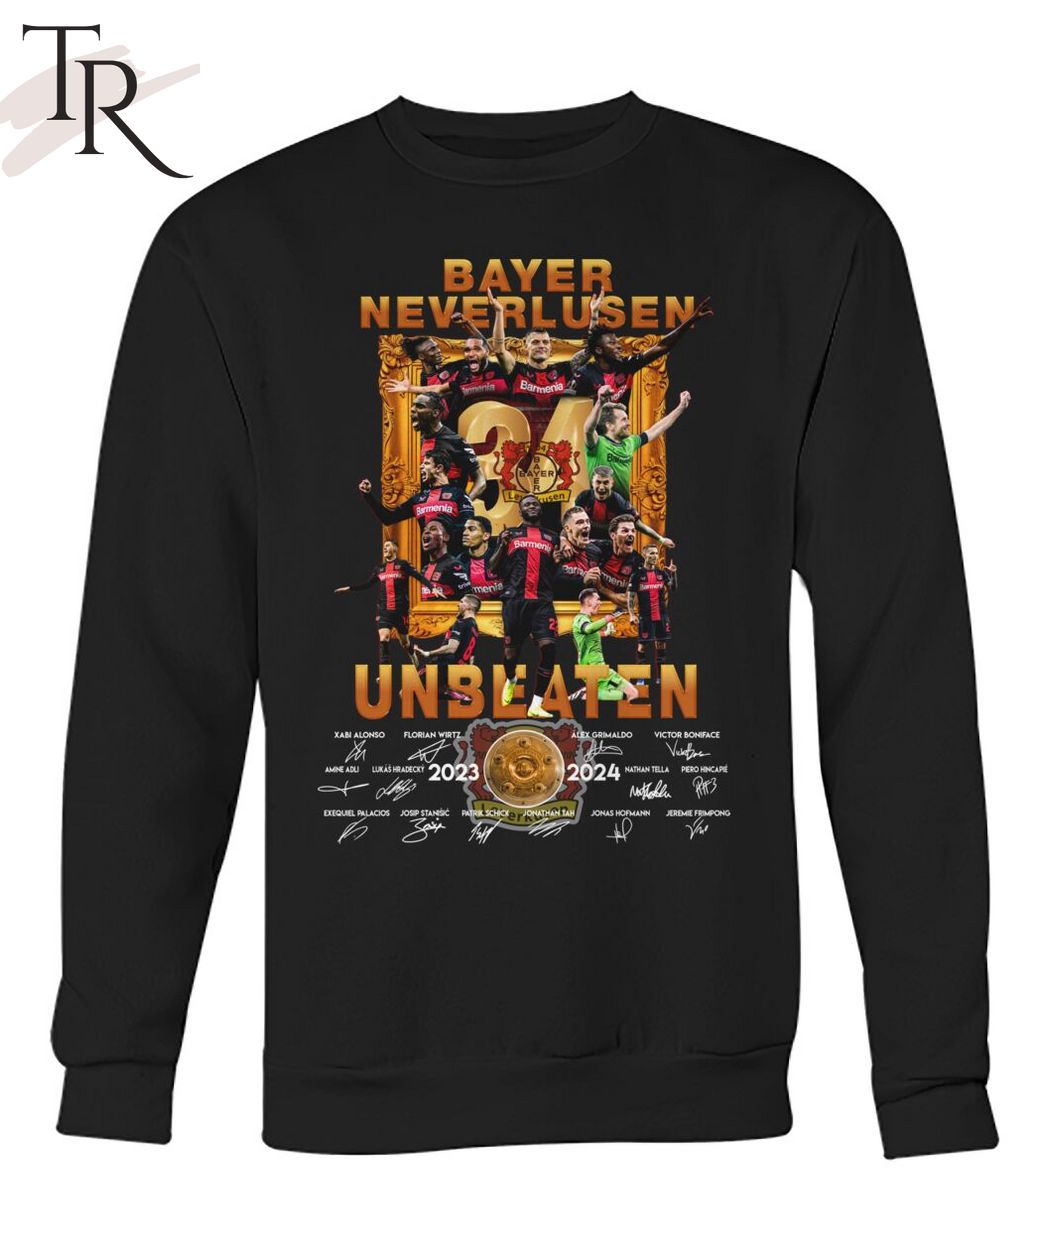 Bayer Neverlusen Unbeaten 2023-2024 T-Shirt